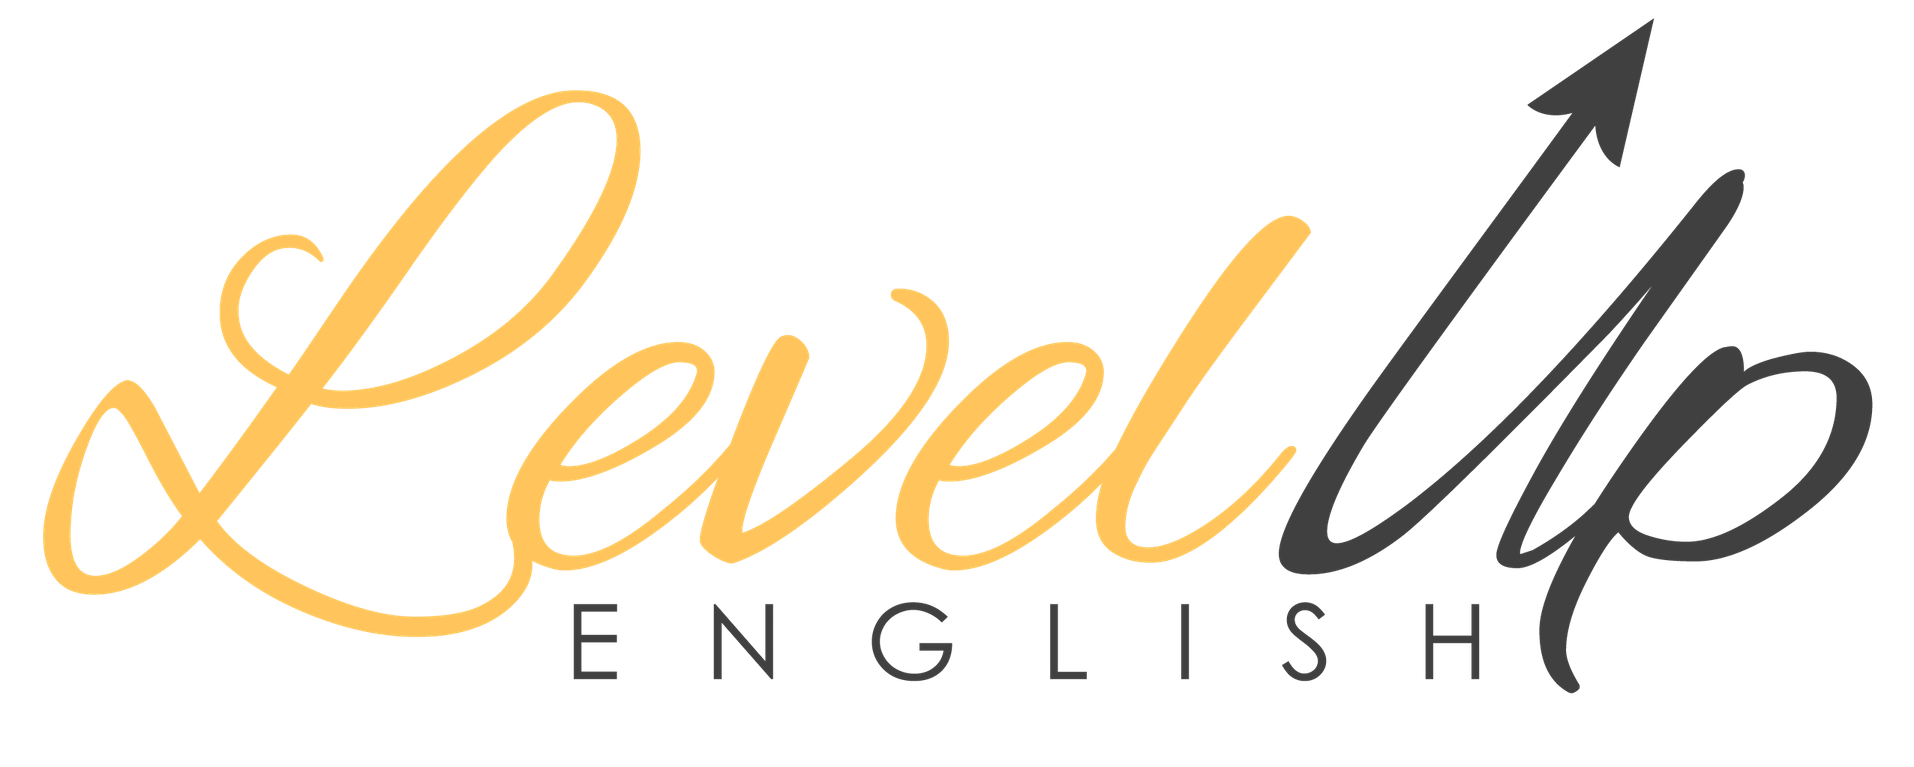 LevelUp English